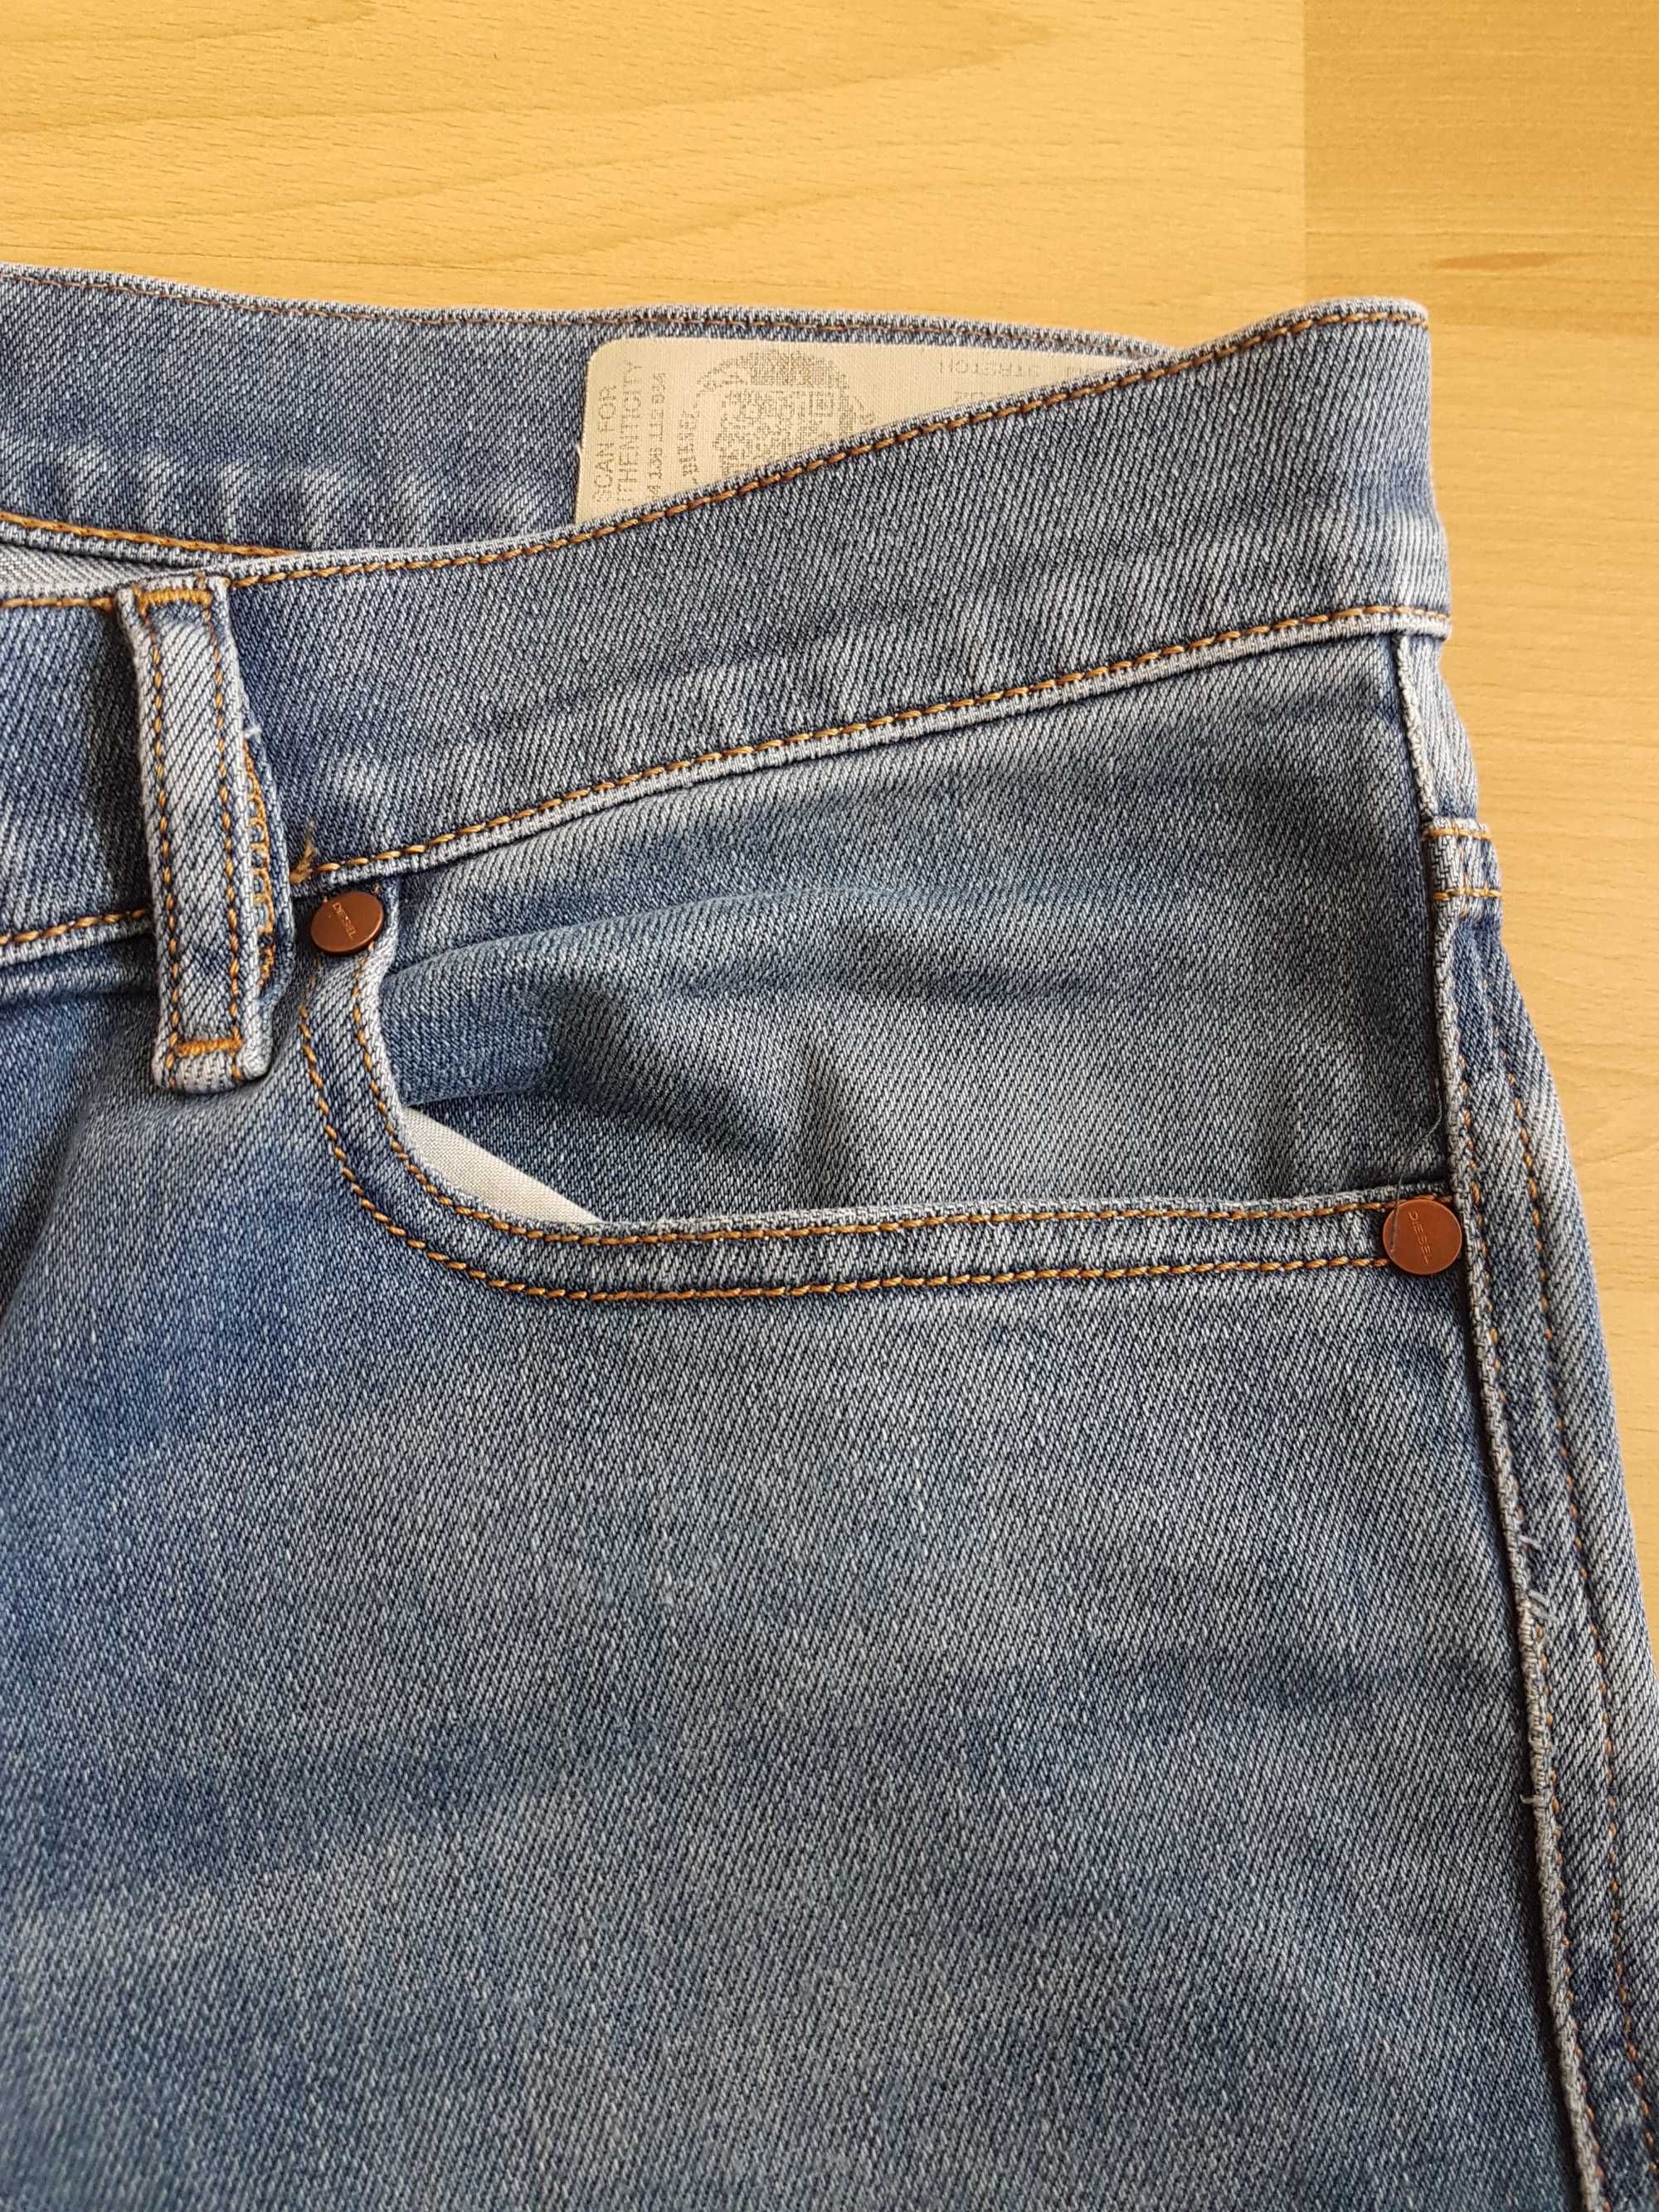 Diesel Tepphar W30 L32 spodnie jeansowe skinny slim rurki jeansy 30/32